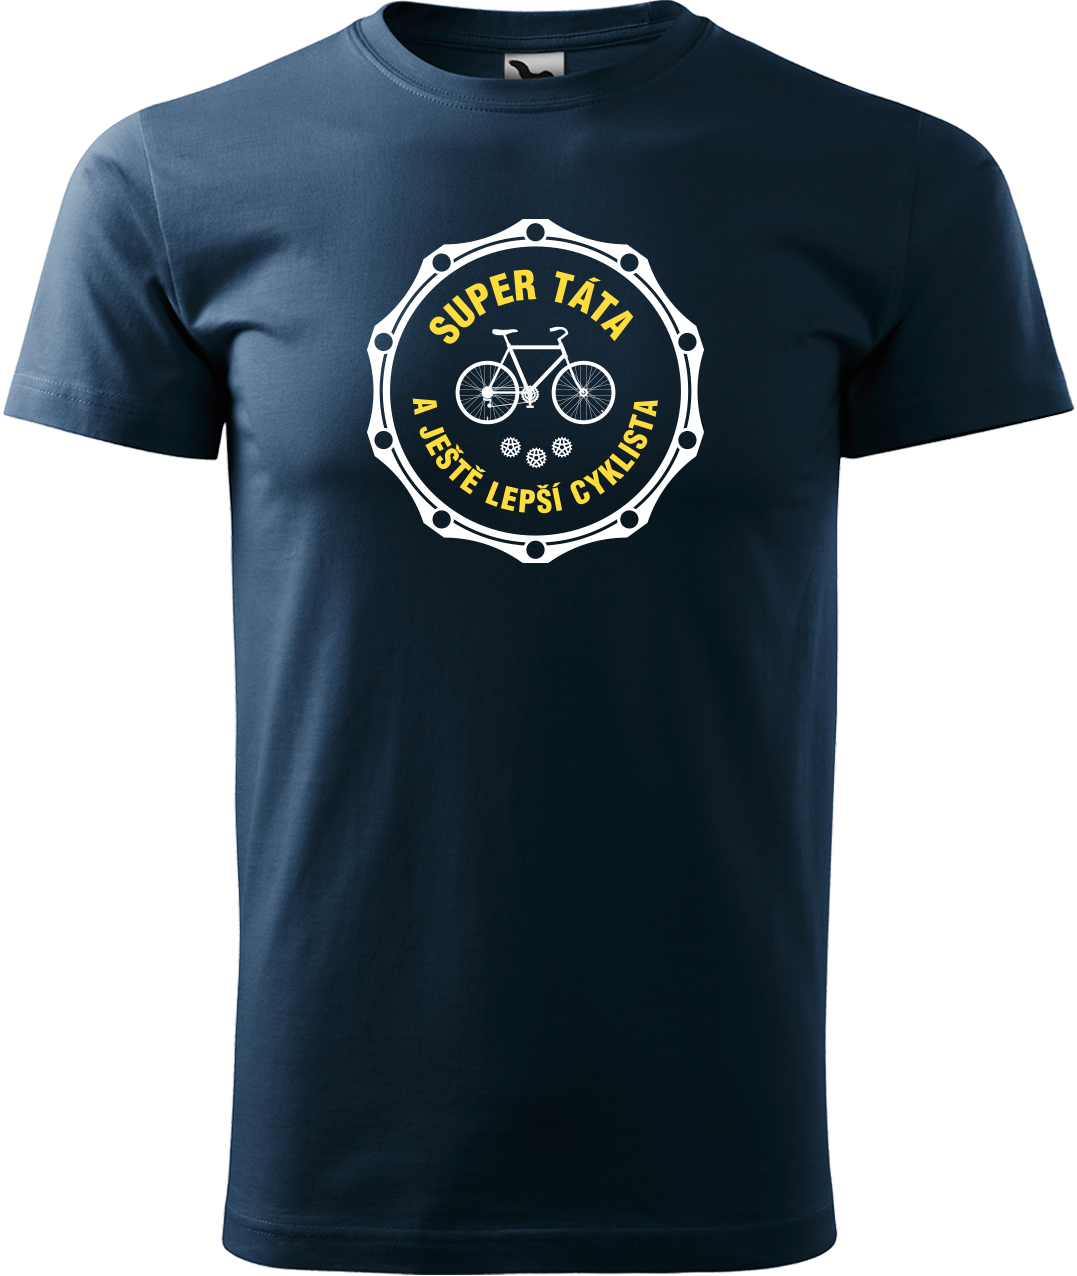 Pánské tričko pro cyklistu - Super táta a ještě lepší cyklista Velikost: XL, Barva: Námořní modrá (02)